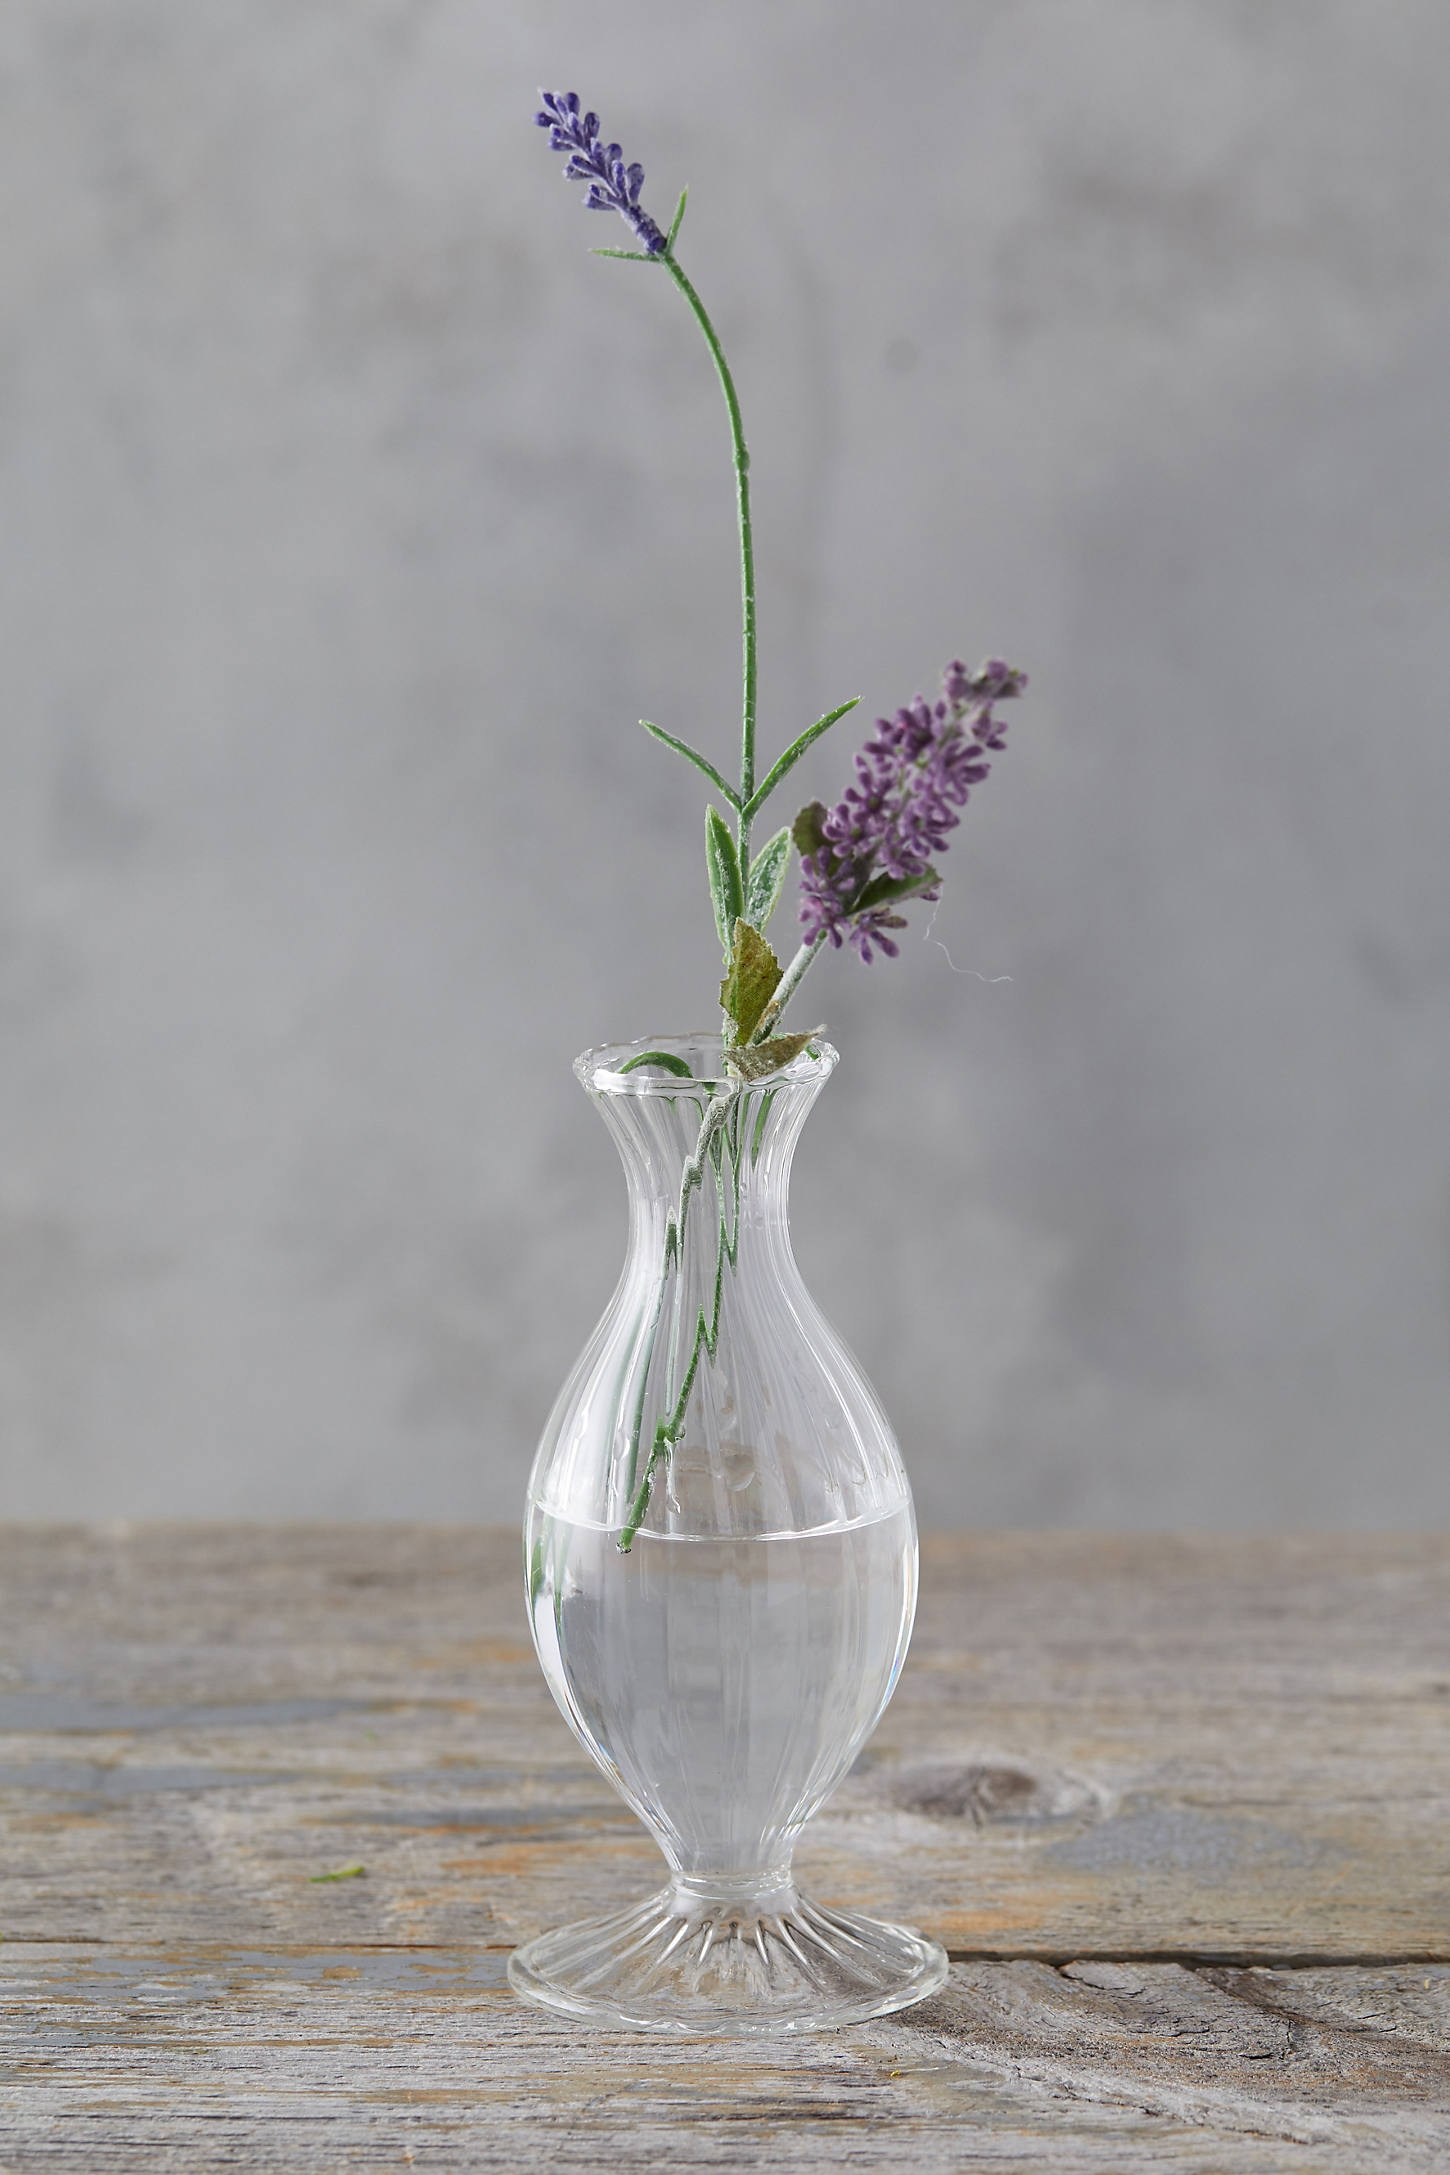 Scalloped Glass Vase - Image 0